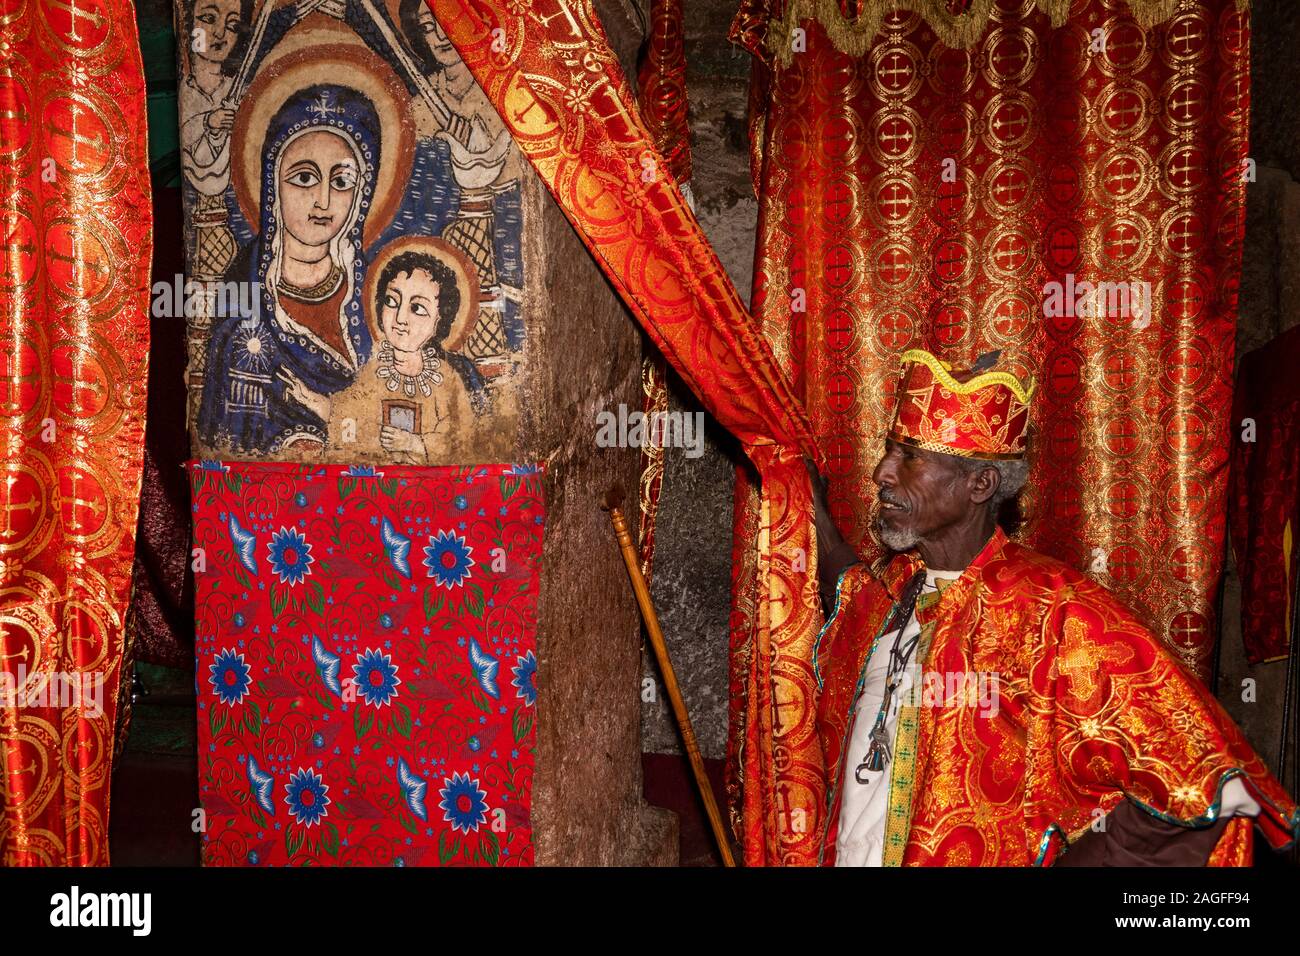 L'Éthiopie, région d'Amhara, Arbatu Ensessa, Lalibela, Biblia Chirkos, prêtre en robe montrant nativité peinture murale Banque D'Images